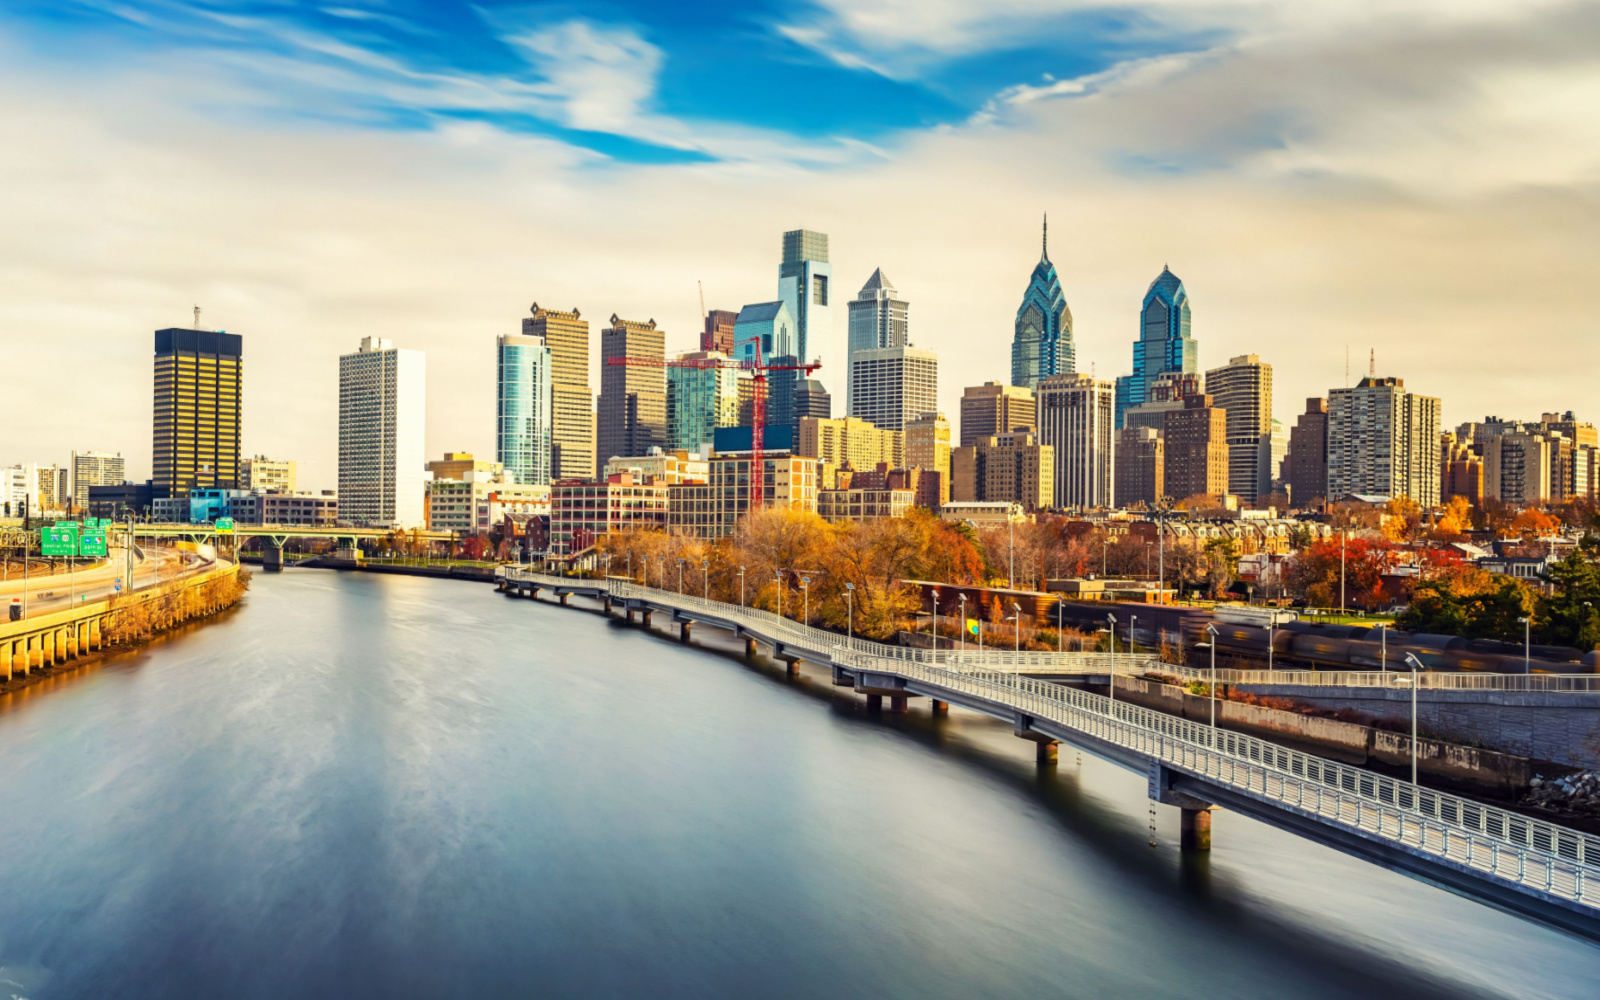 Is Philadelphia Safe? | Travel Tips & Safety Concerns